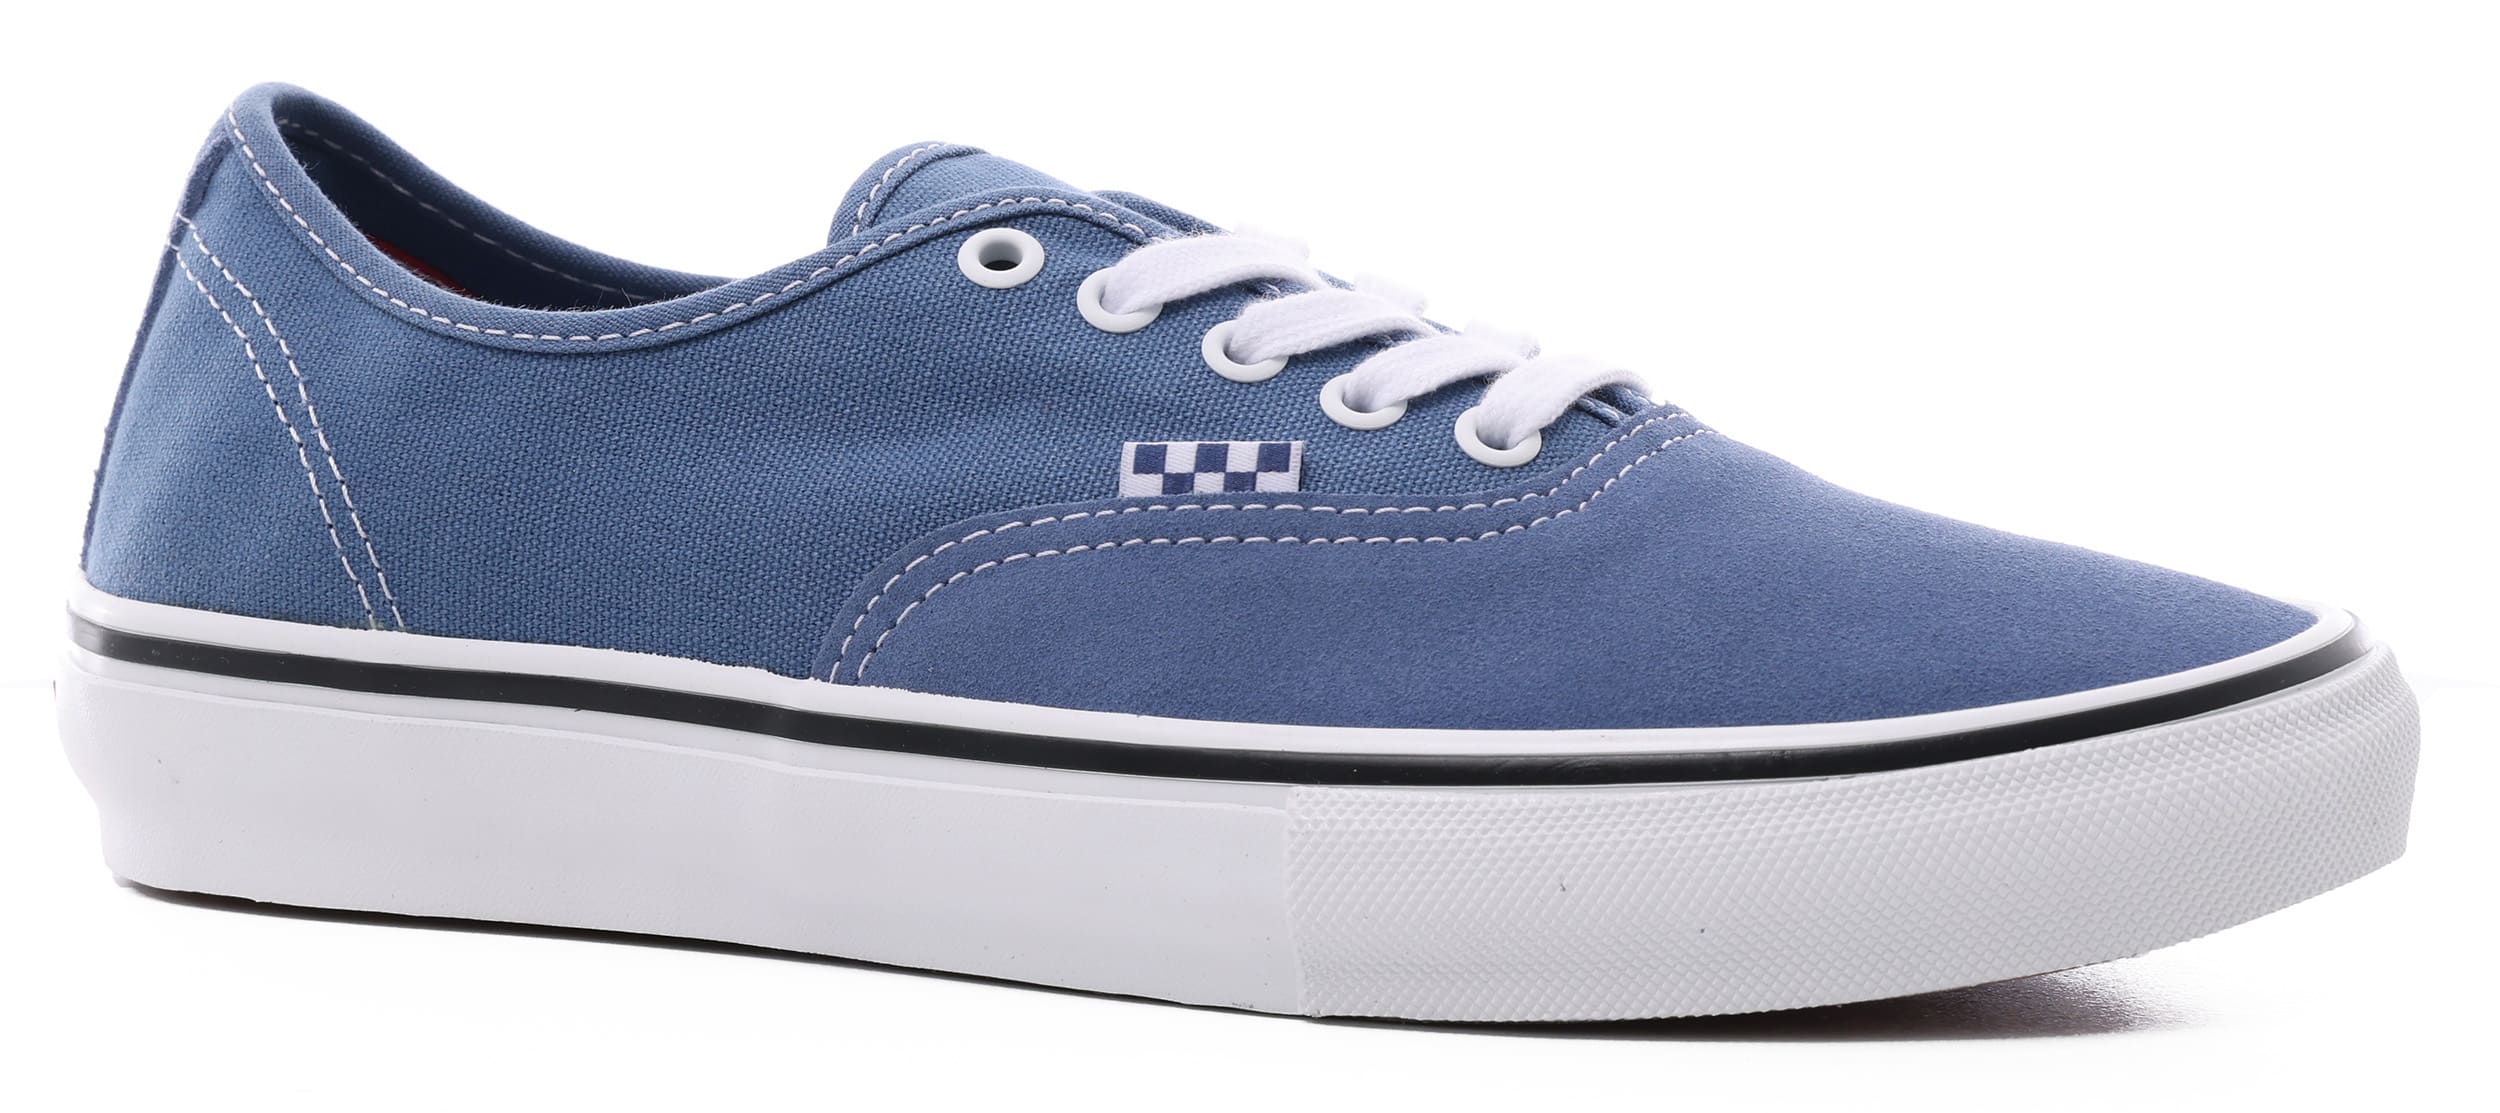 Vans Skate Authentic Shoes - moonlight blue/true white | Tactics